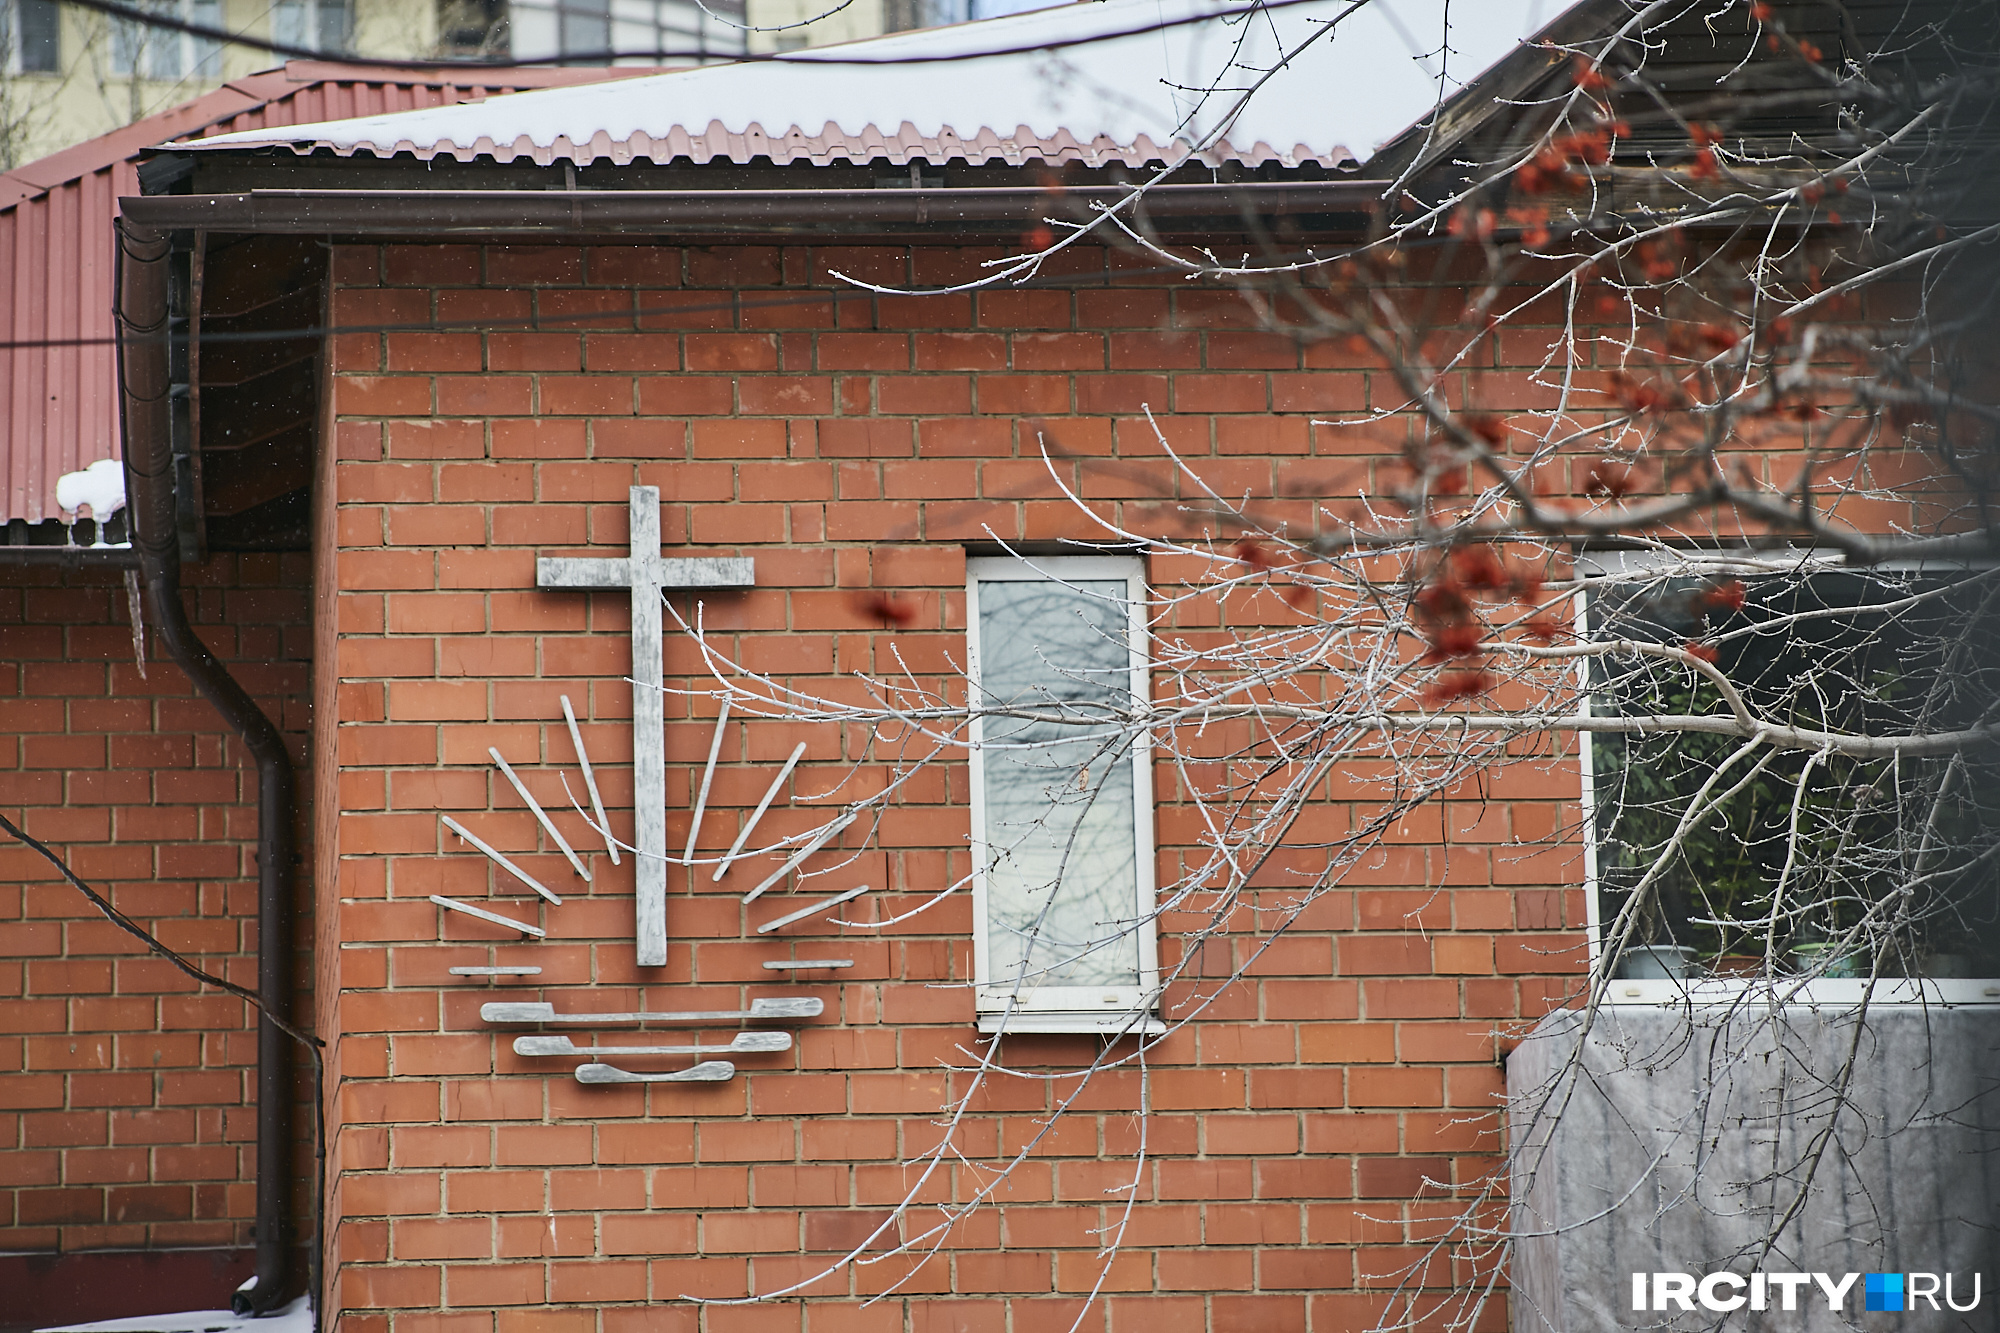 Это эмблема Новоапостольской церкви, она представлена почти во всех регионах России